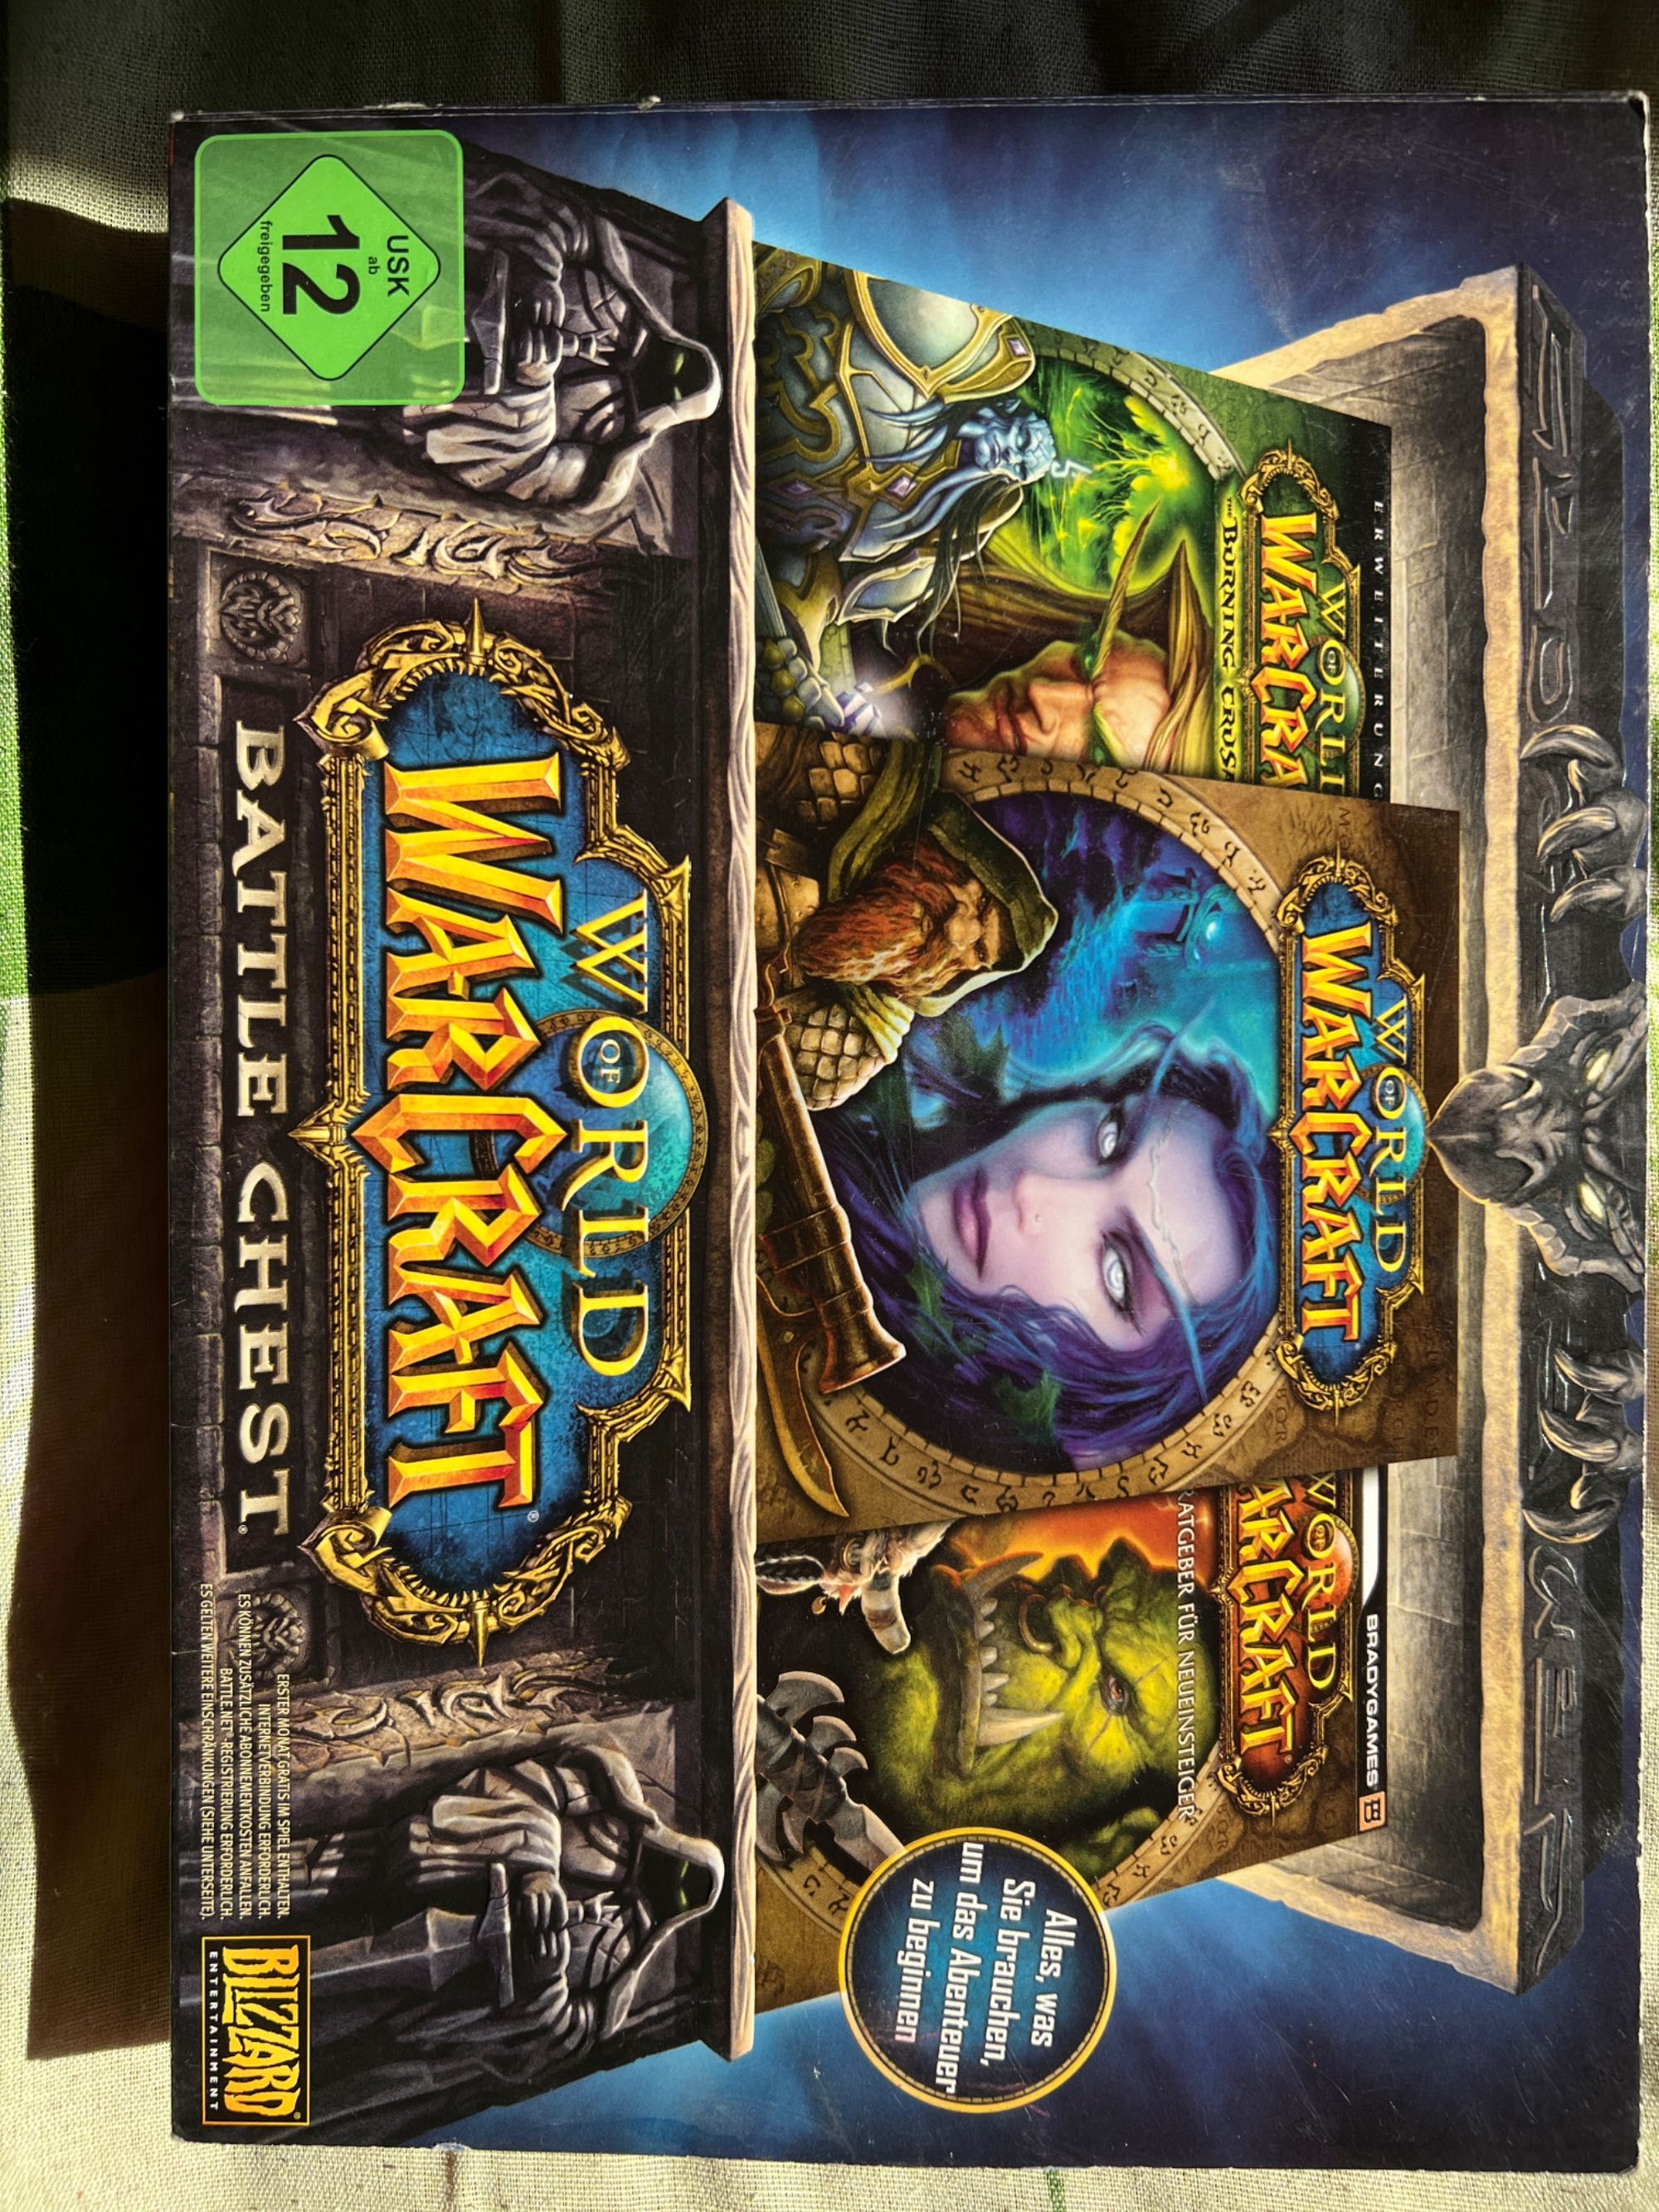 Joc pc word of Warcraft nou plus carte în pachet